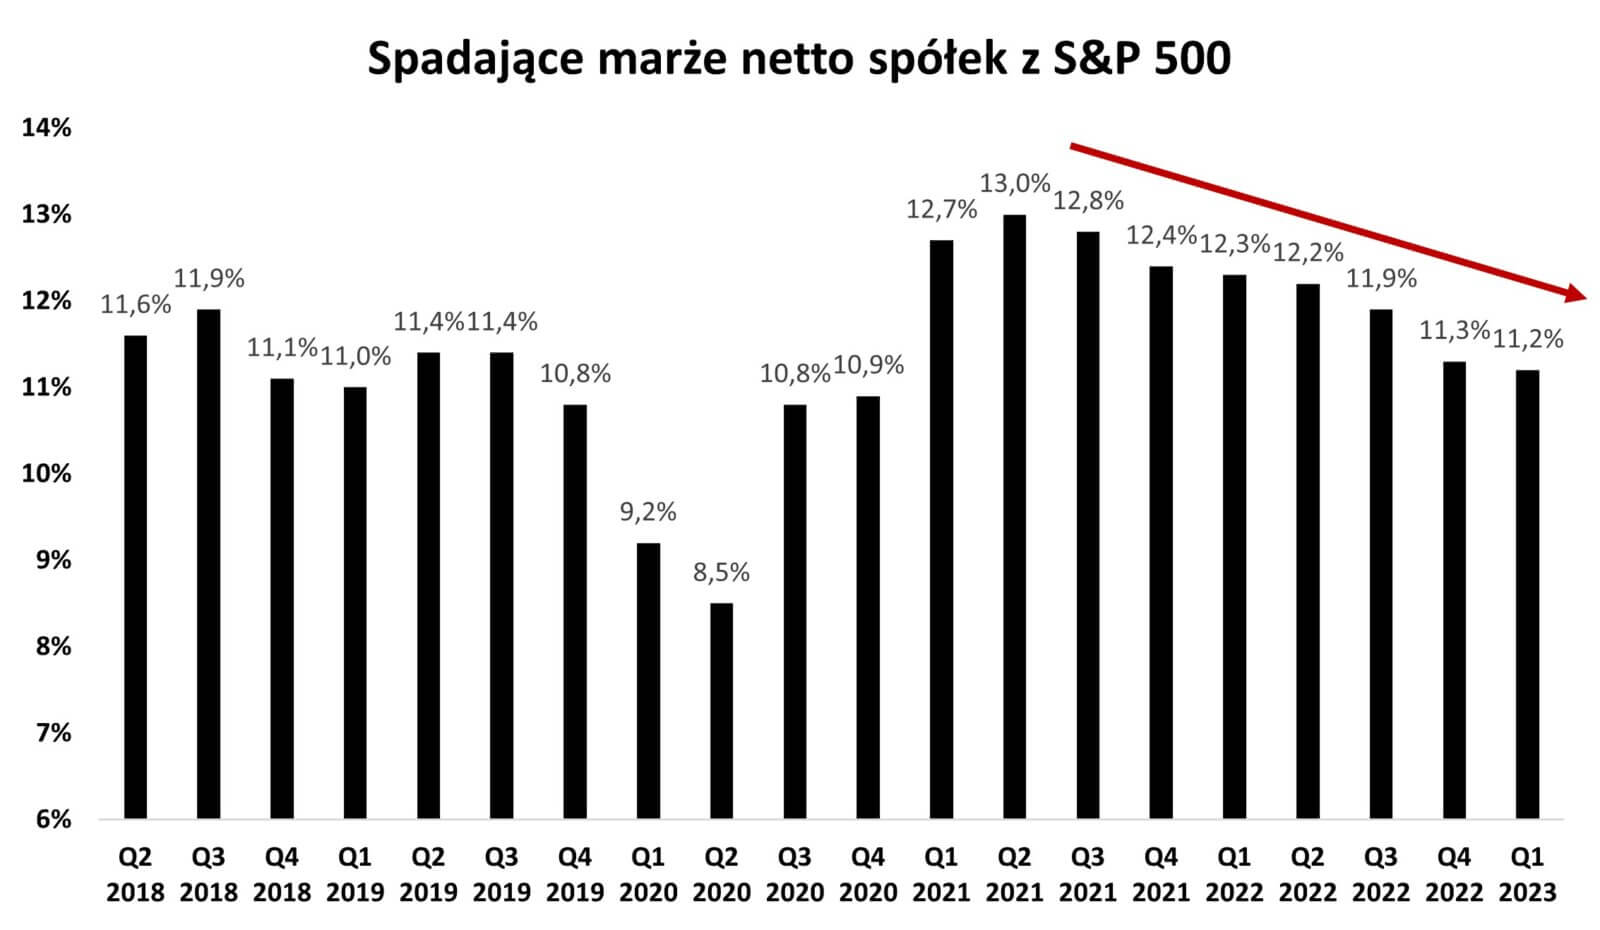 Wykres pokazujący spadające marże netto spółek z S&P 500 w latach 2018 - 2023.